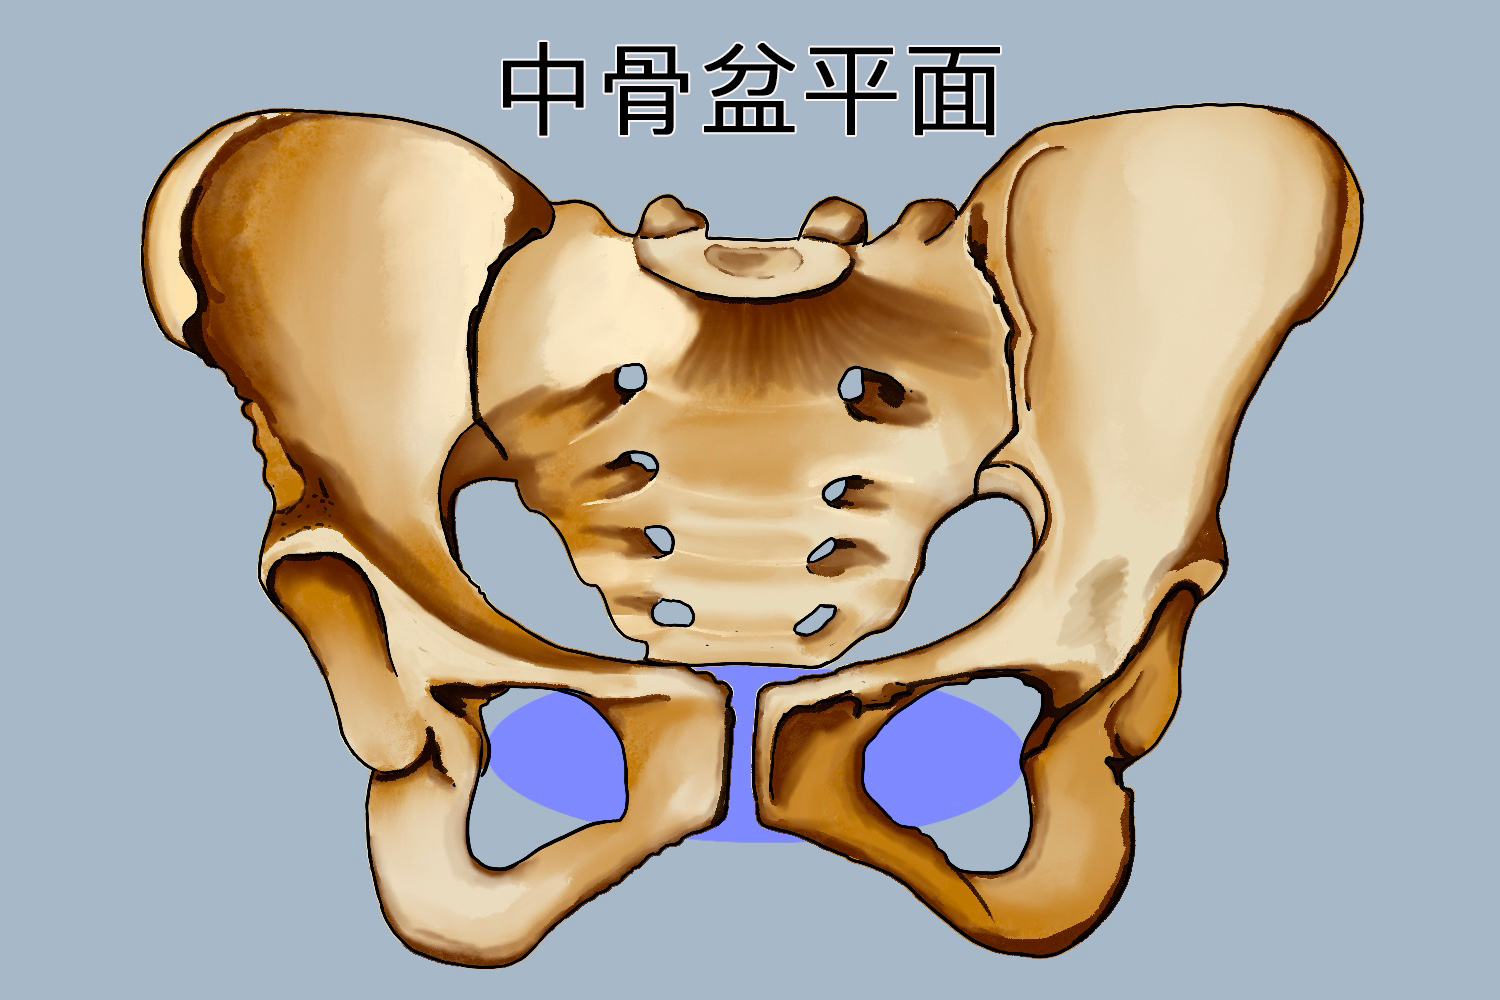 中骨盆平面狭窄图片